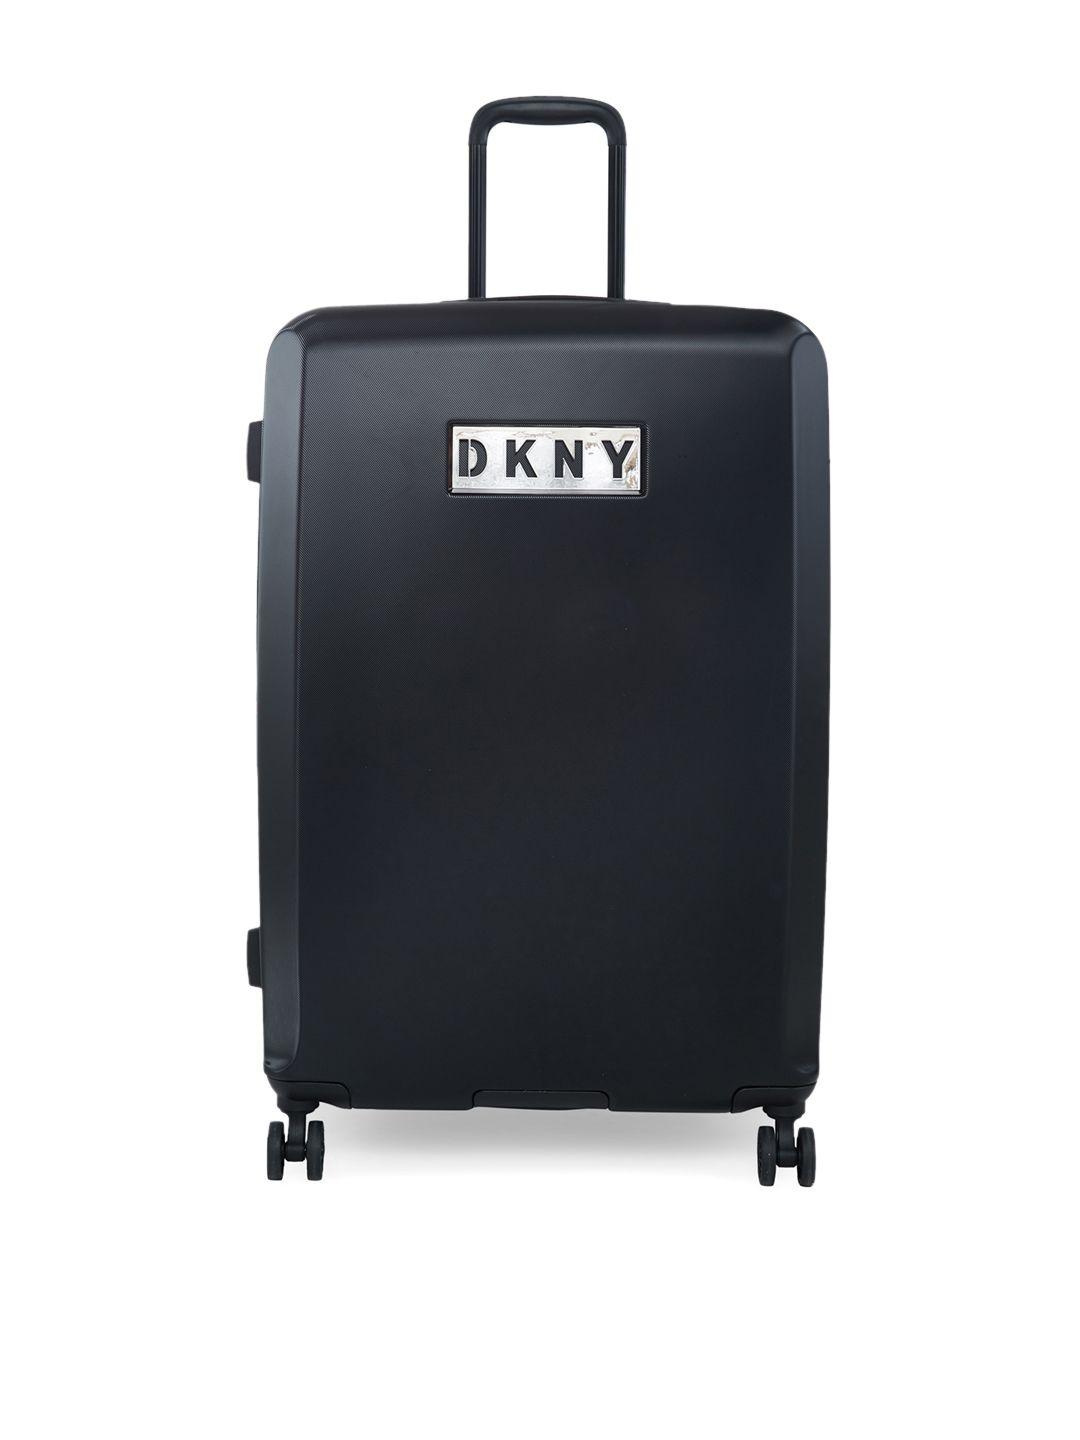 dkny alchemy range black hard large suitcase